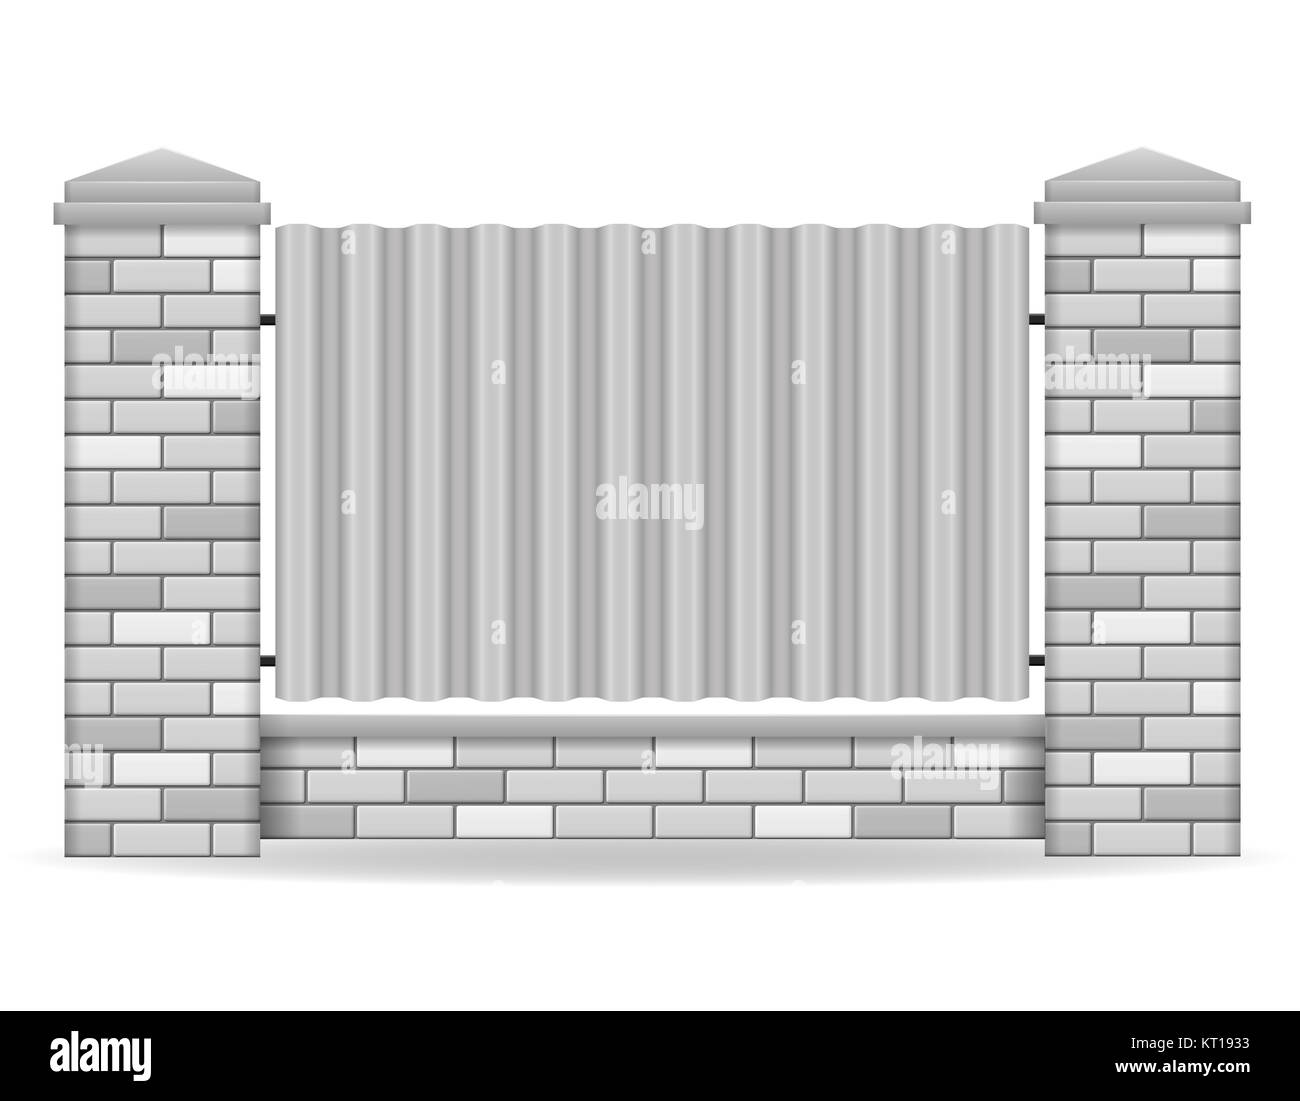 Brick zaun Vector Illustration auf weißem Hintergrund Stockfoto